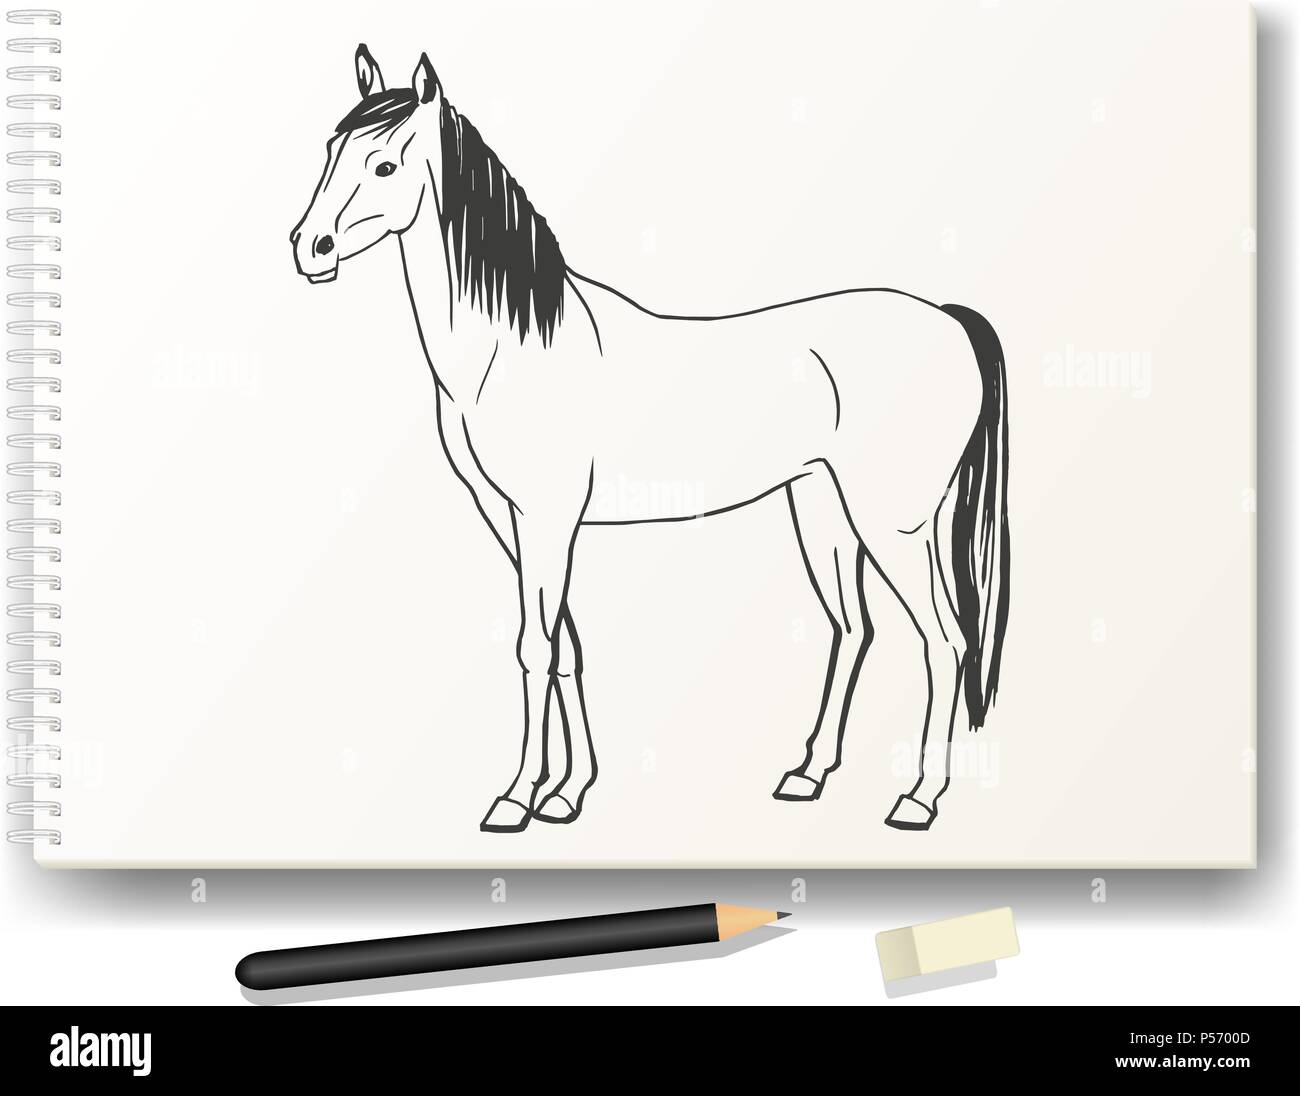 Cavallo disegnato a mano a matita su album A4 Illustrazione Vettoriale